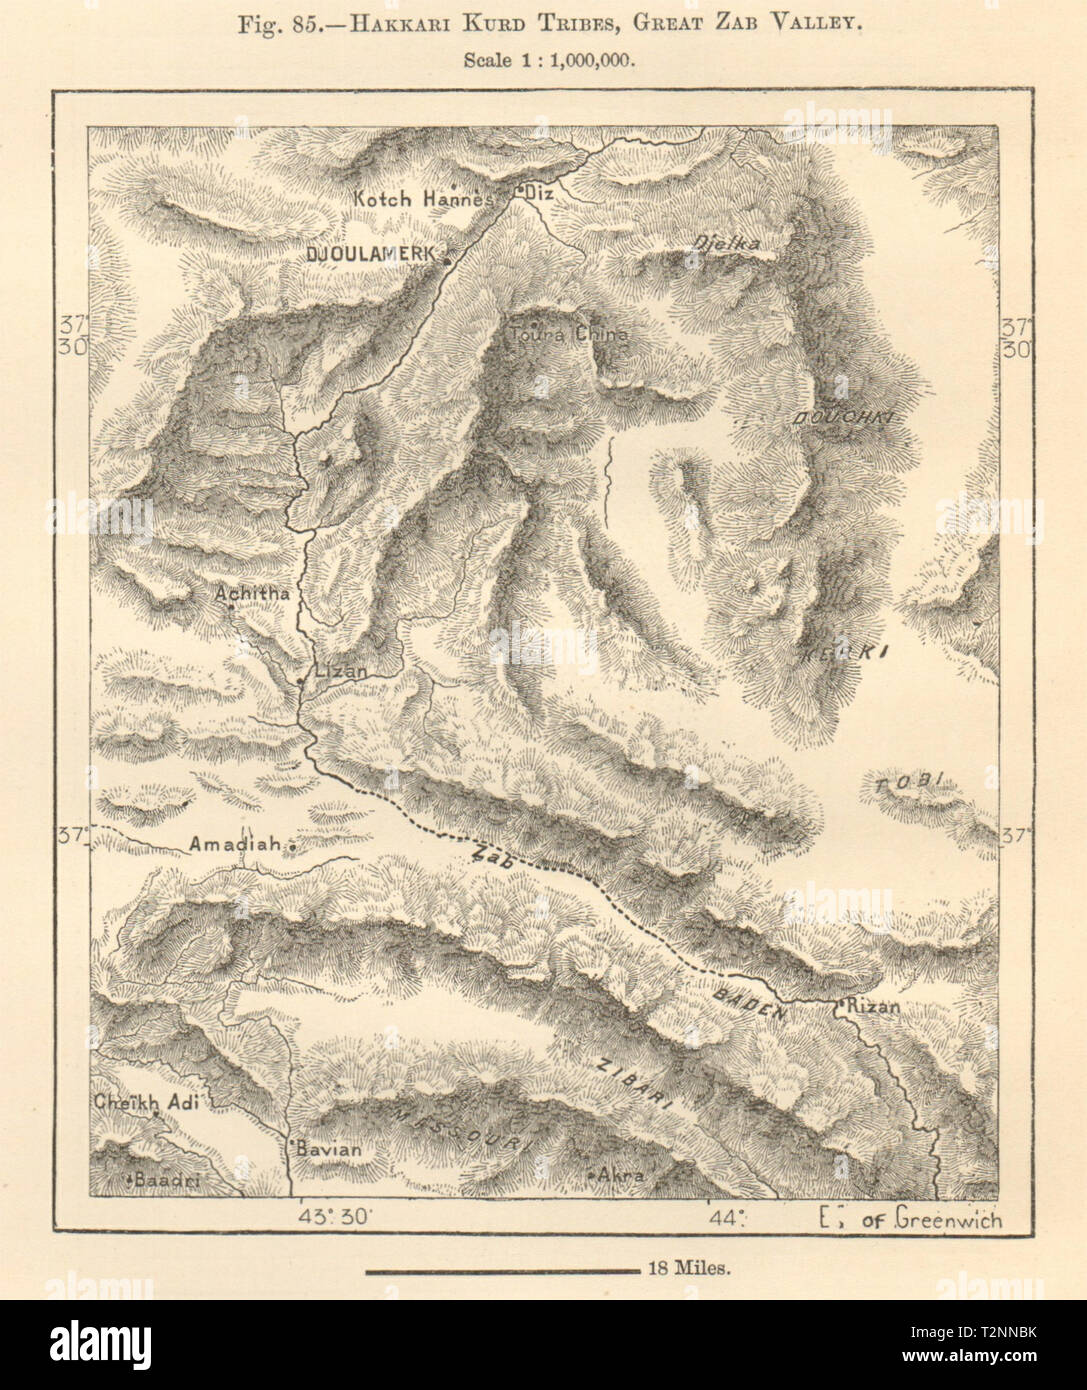 Djoulmark (Hakkari) Kurdistan Great Zab Valley Amedi Iraq Turkey Sketch map 1885 Stock Photo